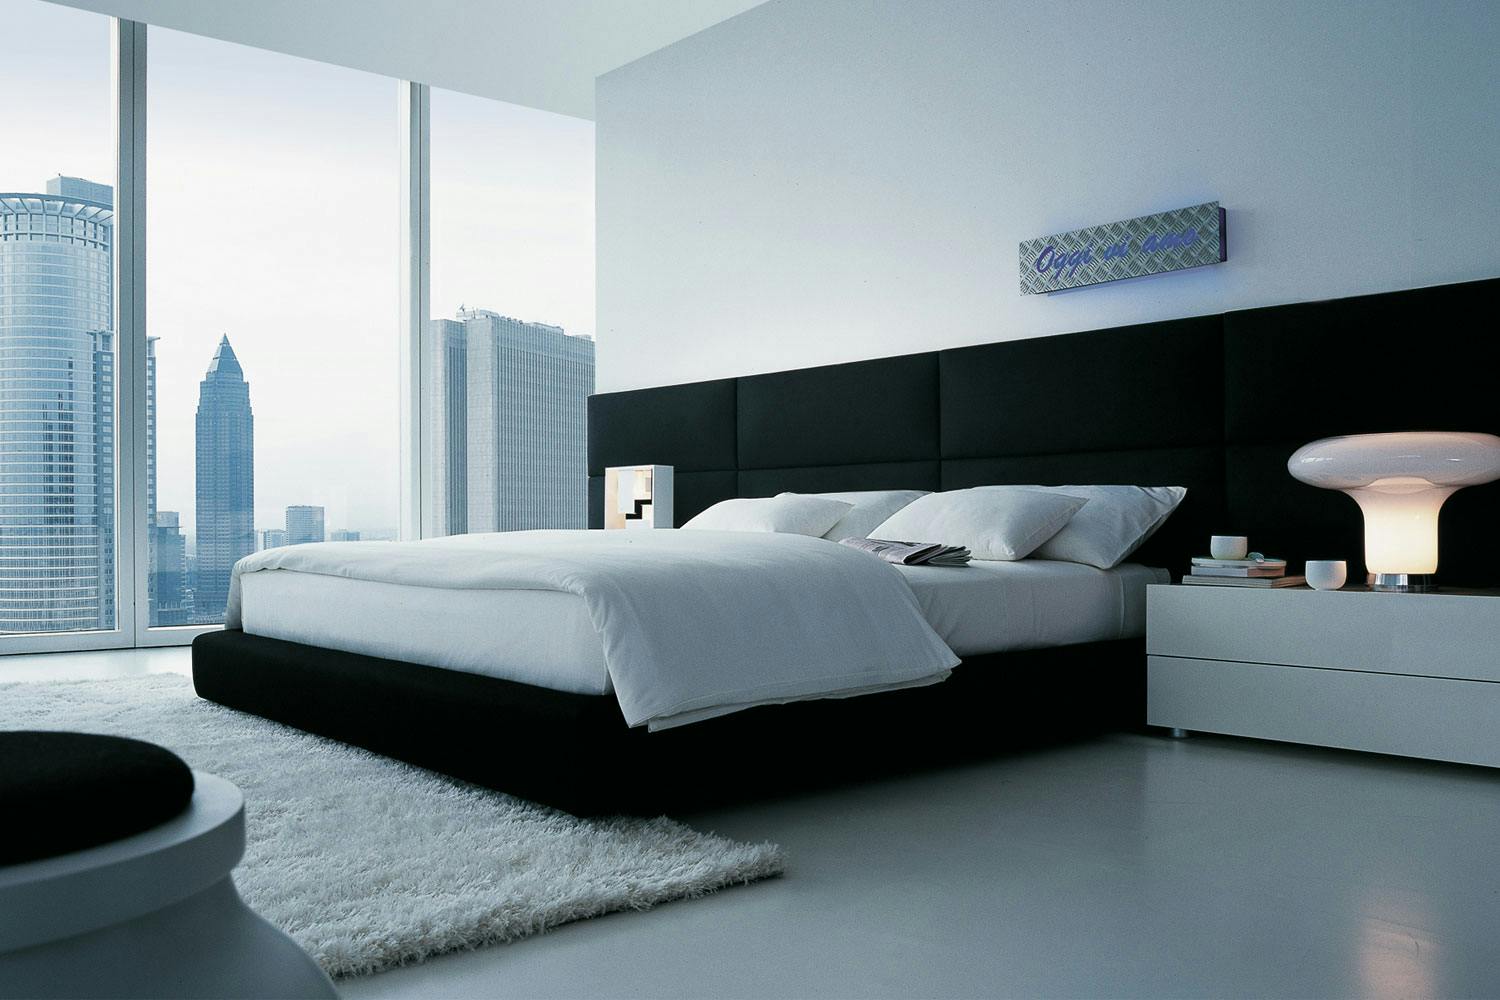 dream bed lx640 mattress